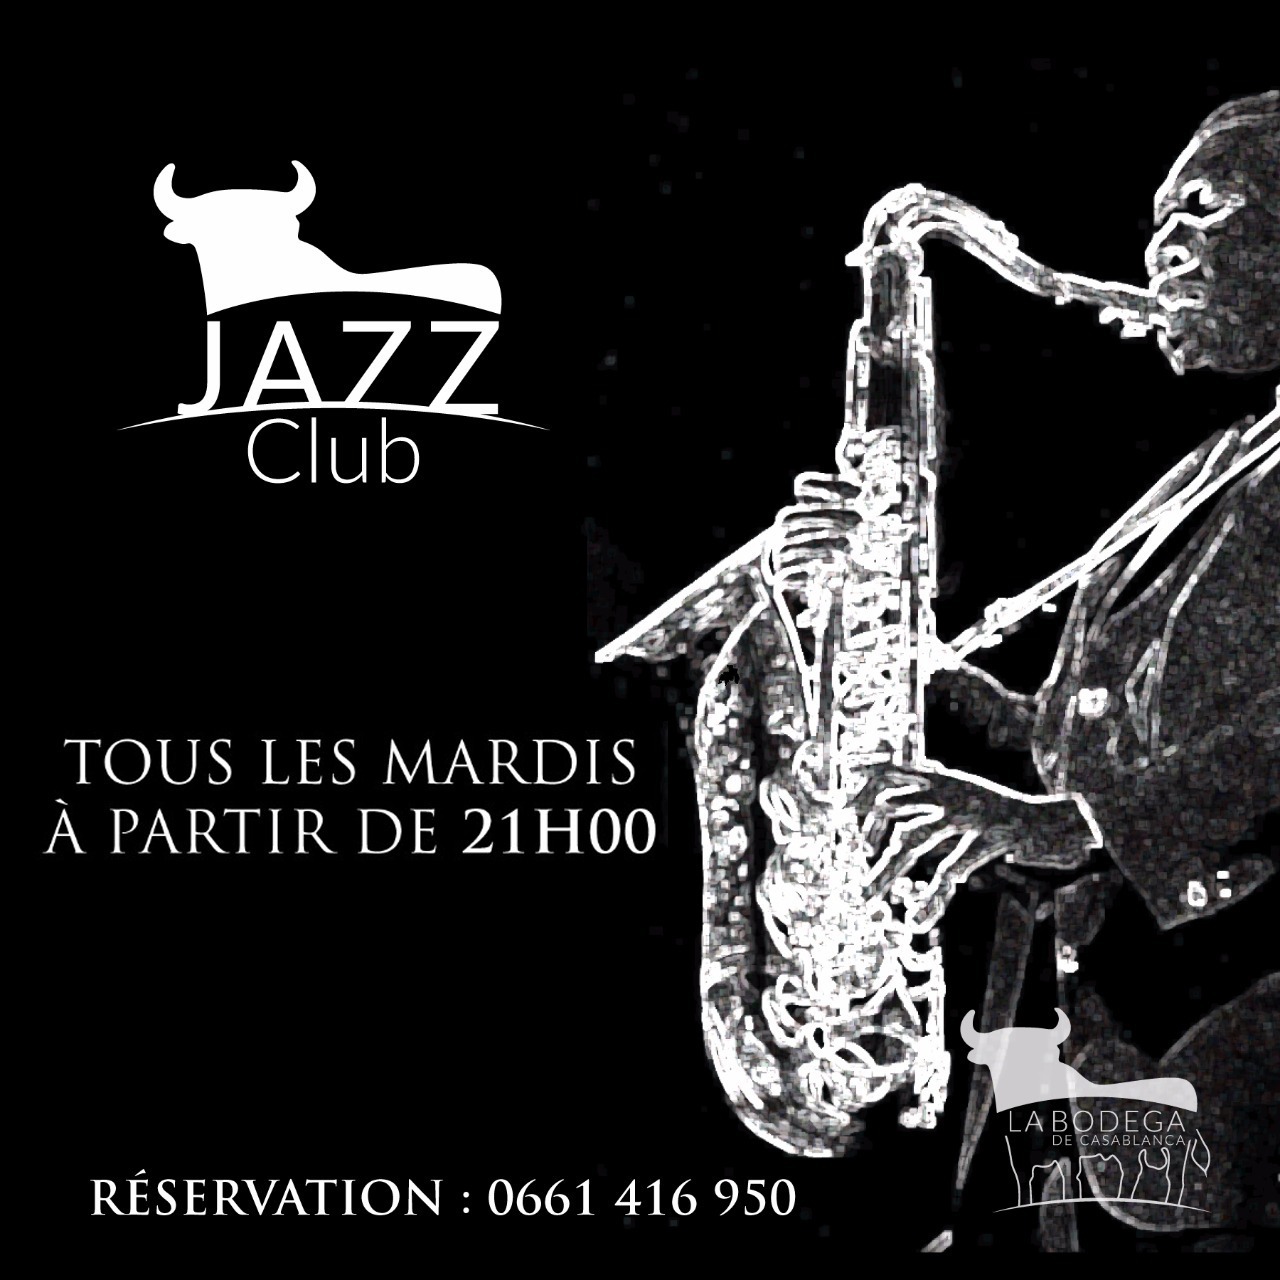 Jazz club, tous les mardis à partir de 21 heures